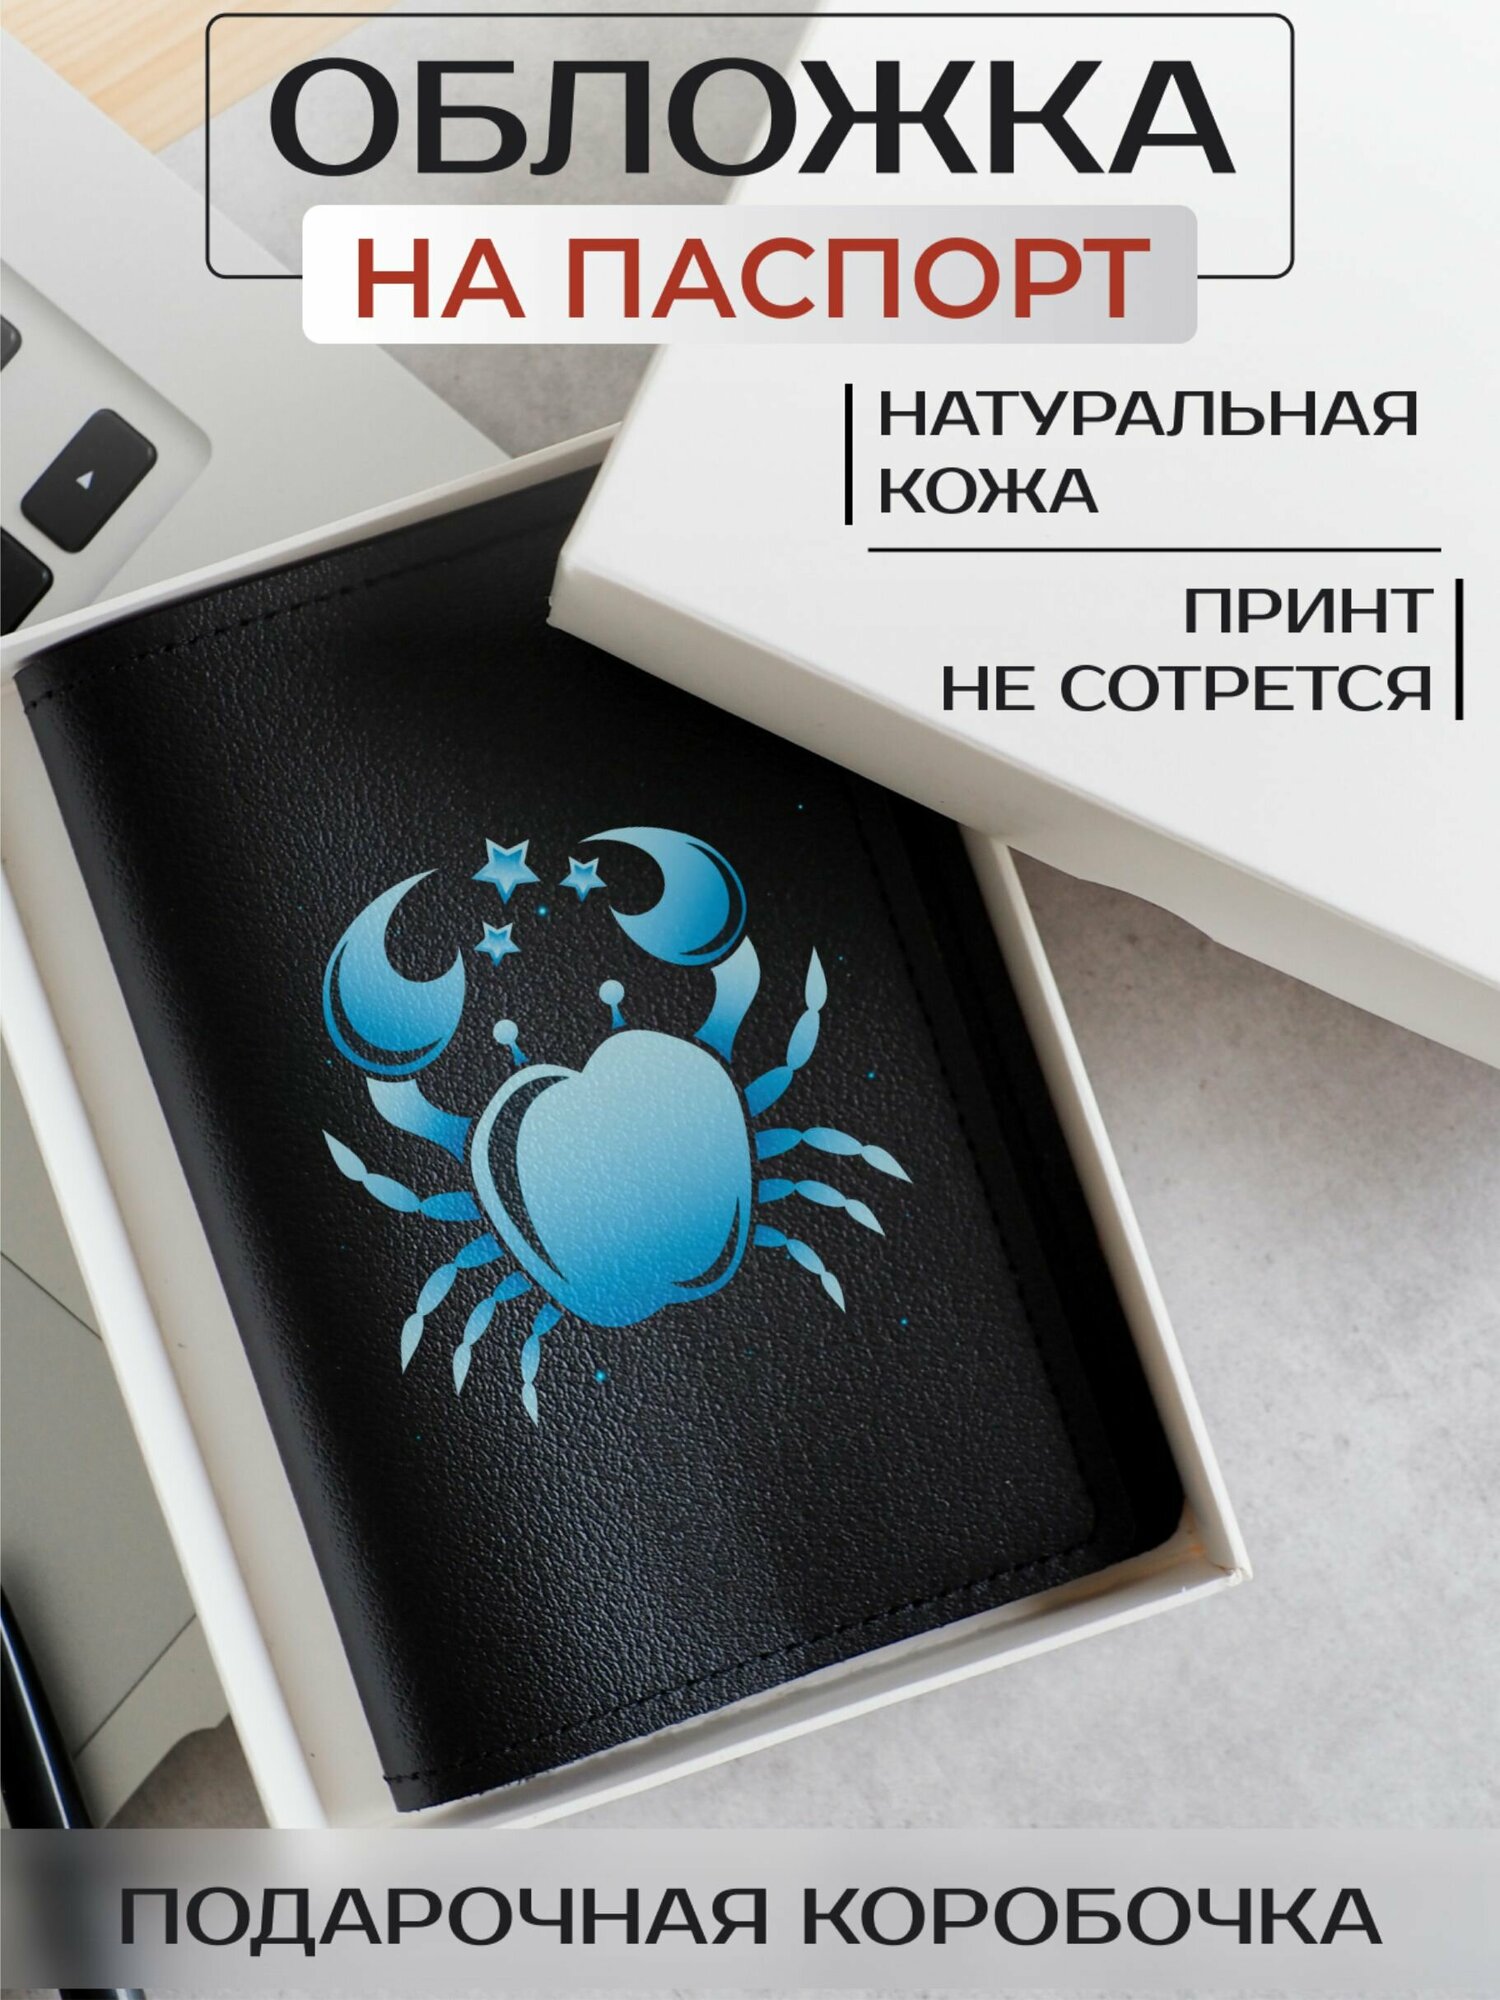 Обложка для паспорта RUSSIAN HandMade 